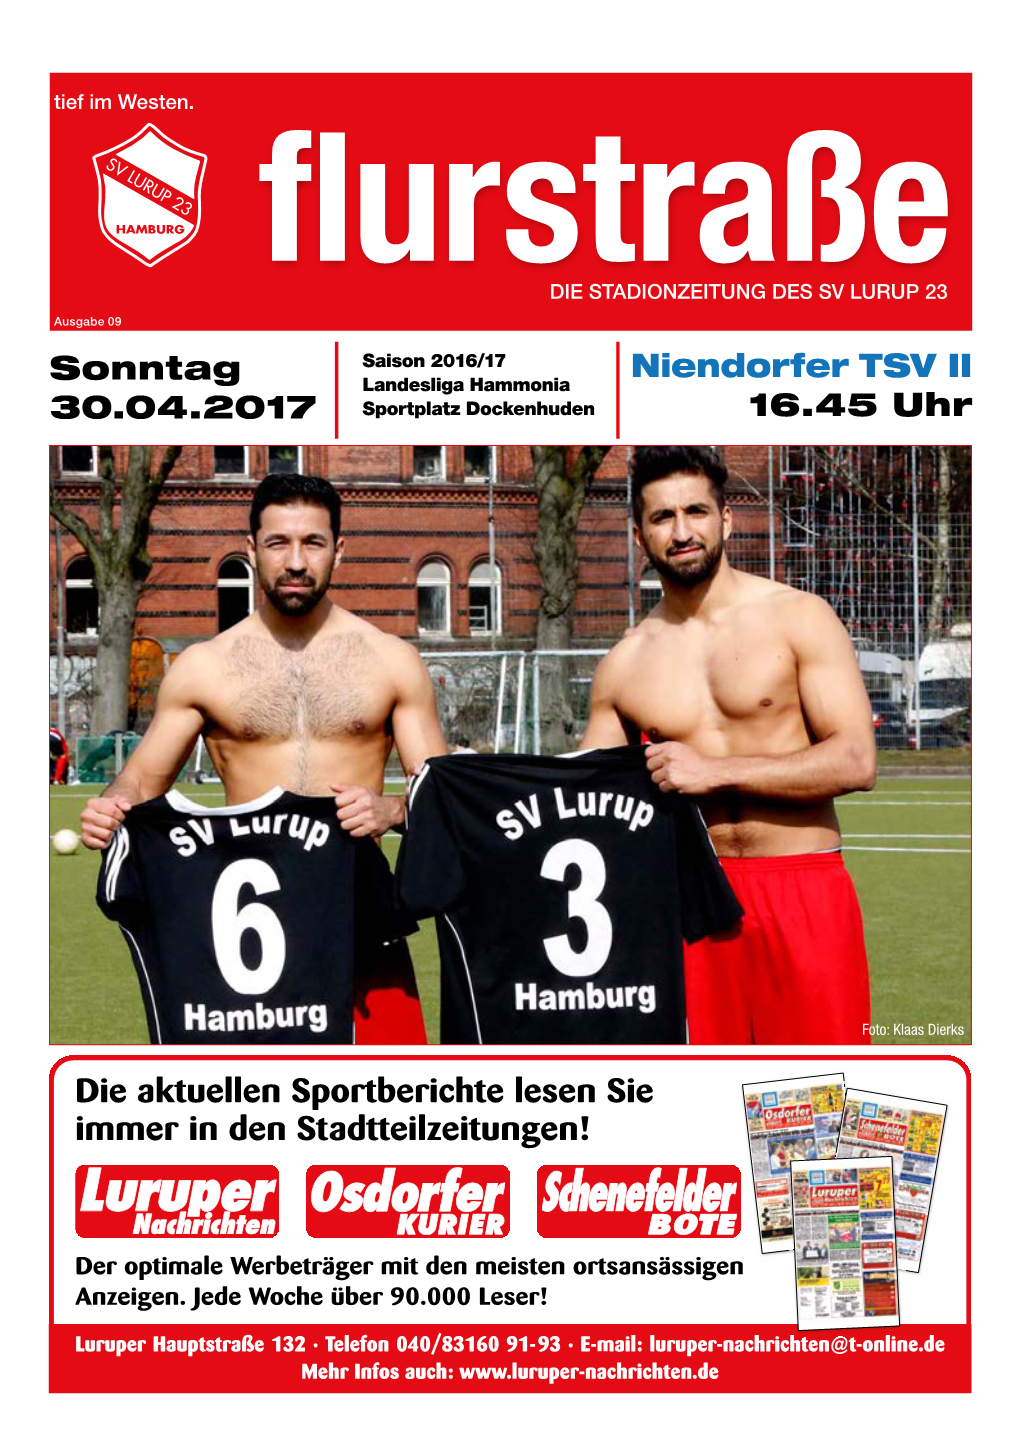 Die Aktuellen Sportberichte Lesen Sie Immer in Den Stadtteilzeitungen! Brandstücken 22 22549 Hamburg Tel